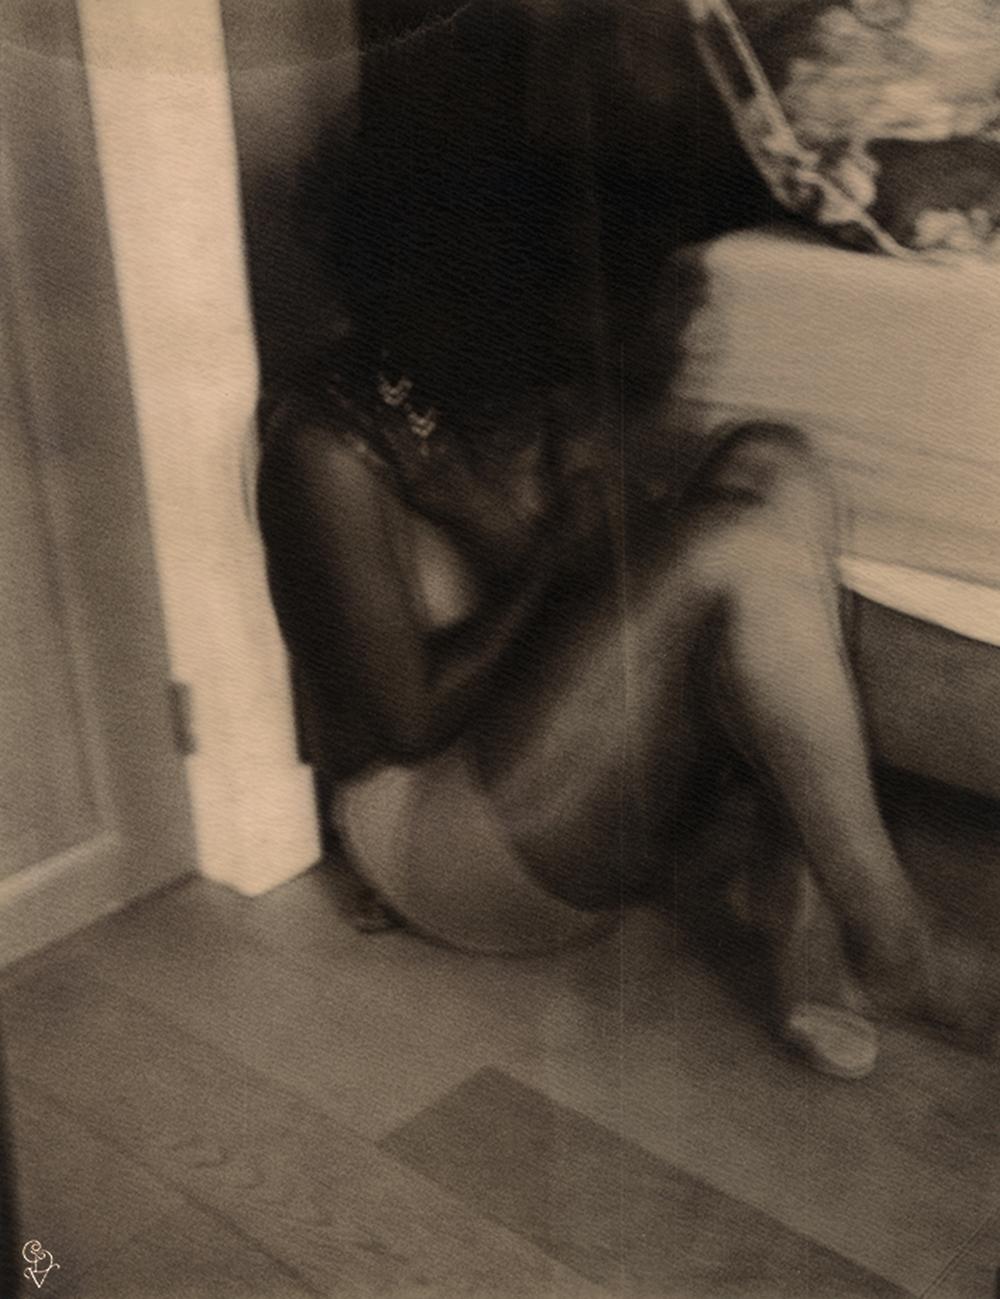 SCENES n°12G1 (Sa belle droite) - Polaroid, contemporain, femmes, couleur, XXIe siècle